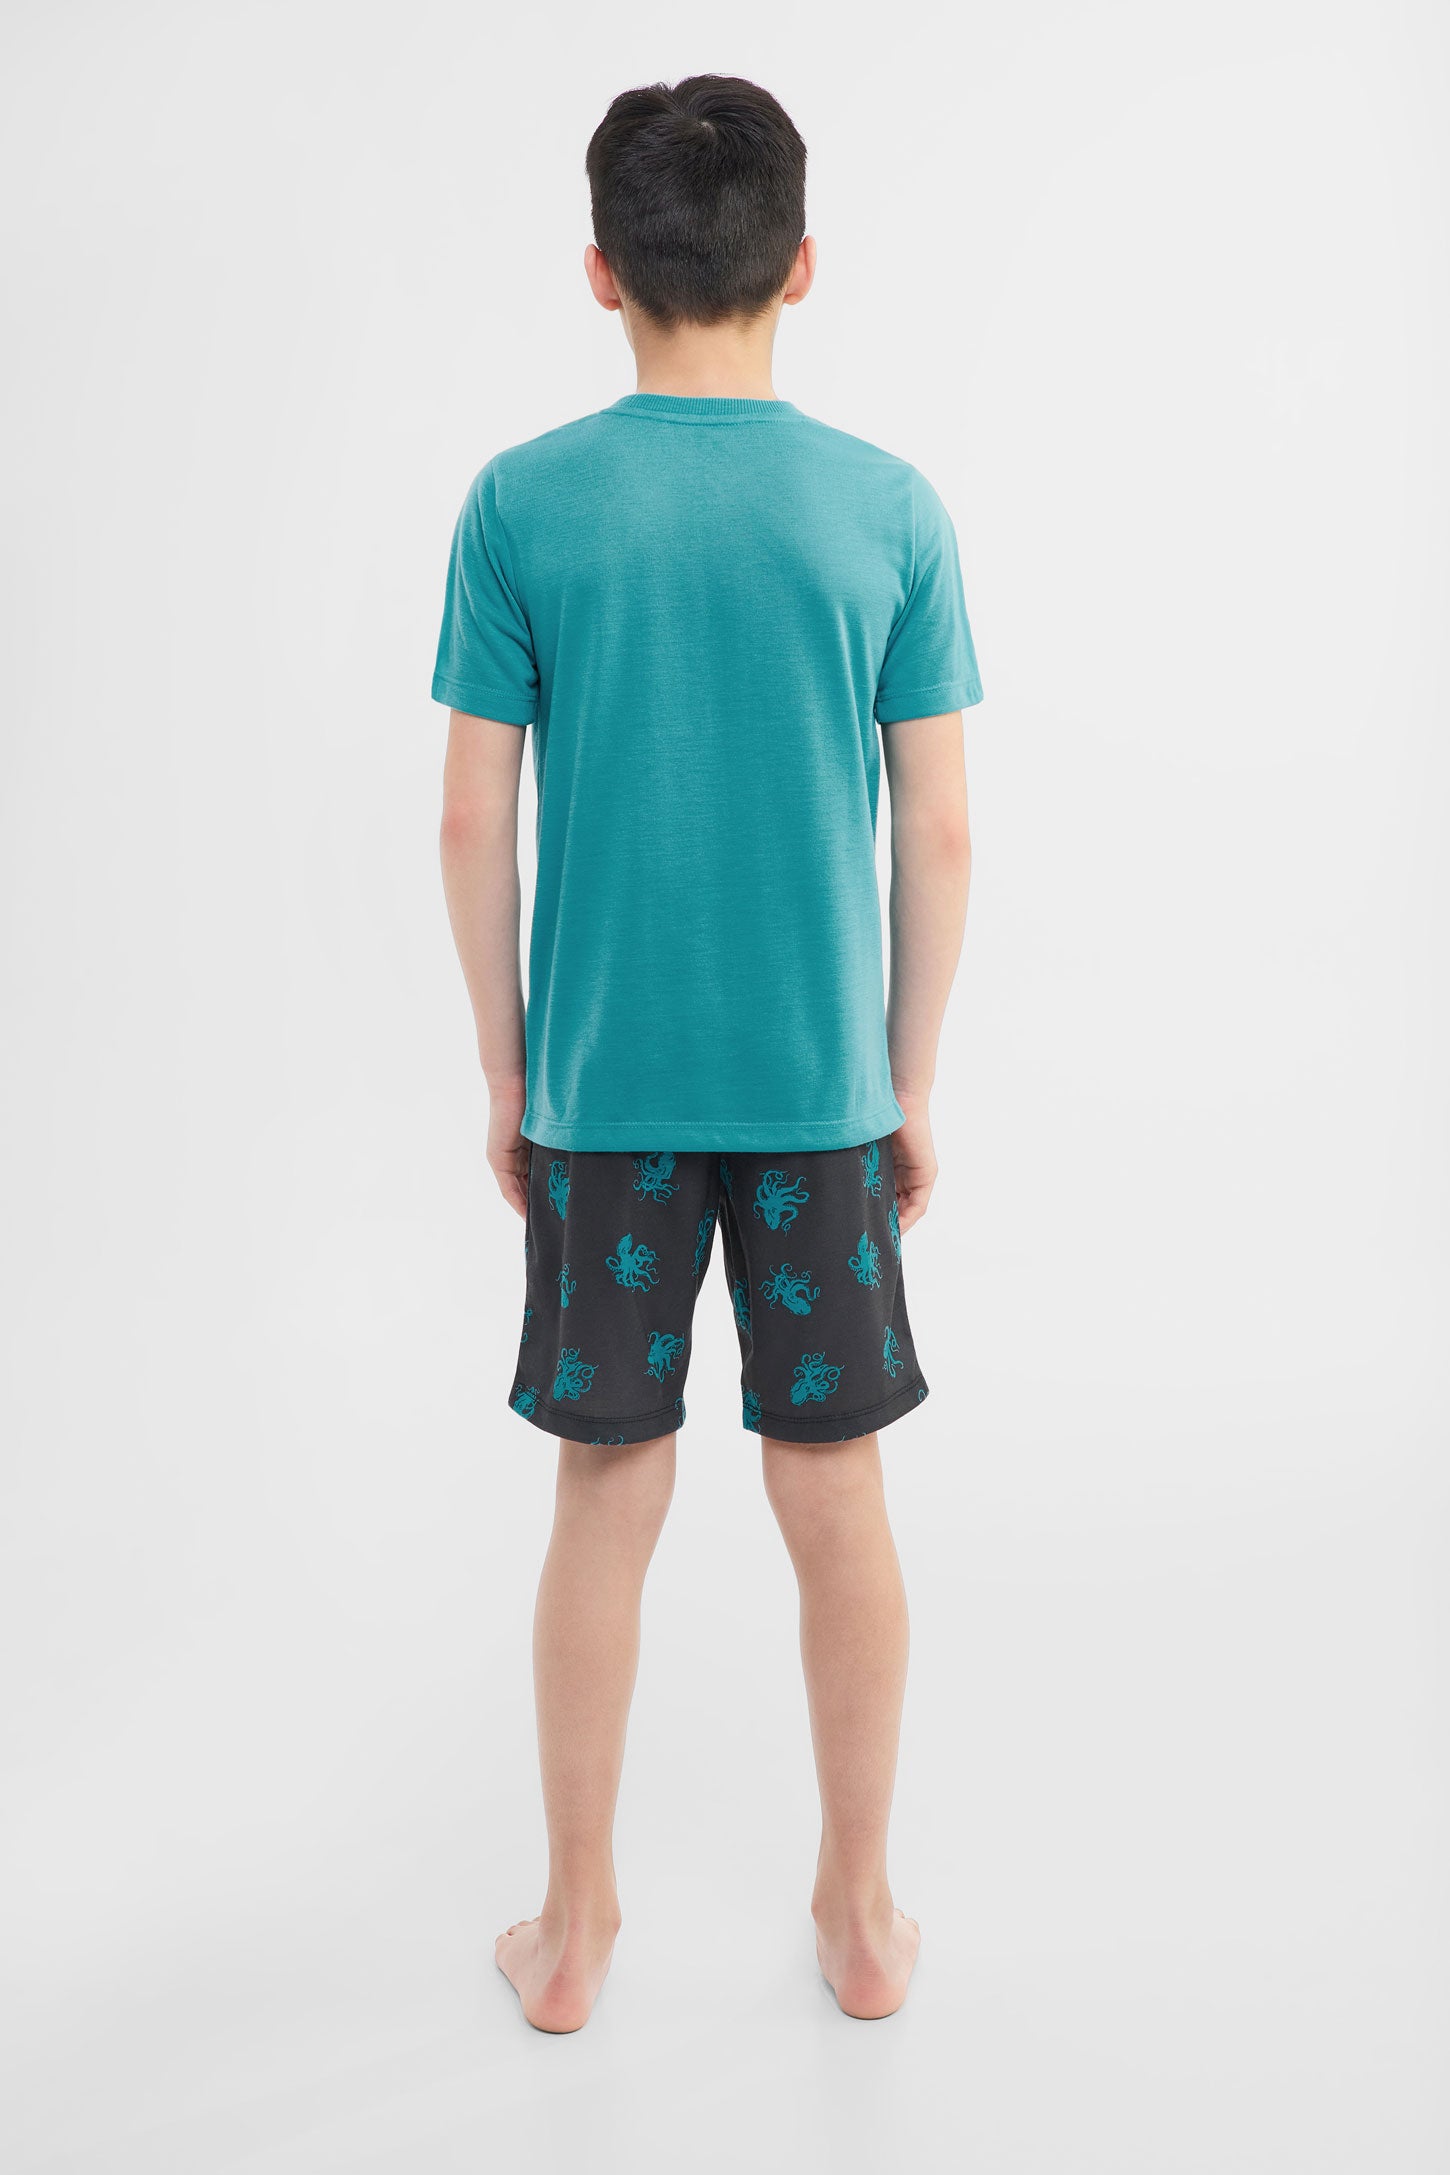 Pyjama 2-pièces t-shirt et short imprimé, 2/40$ - Ado garçon && TURQUOISE